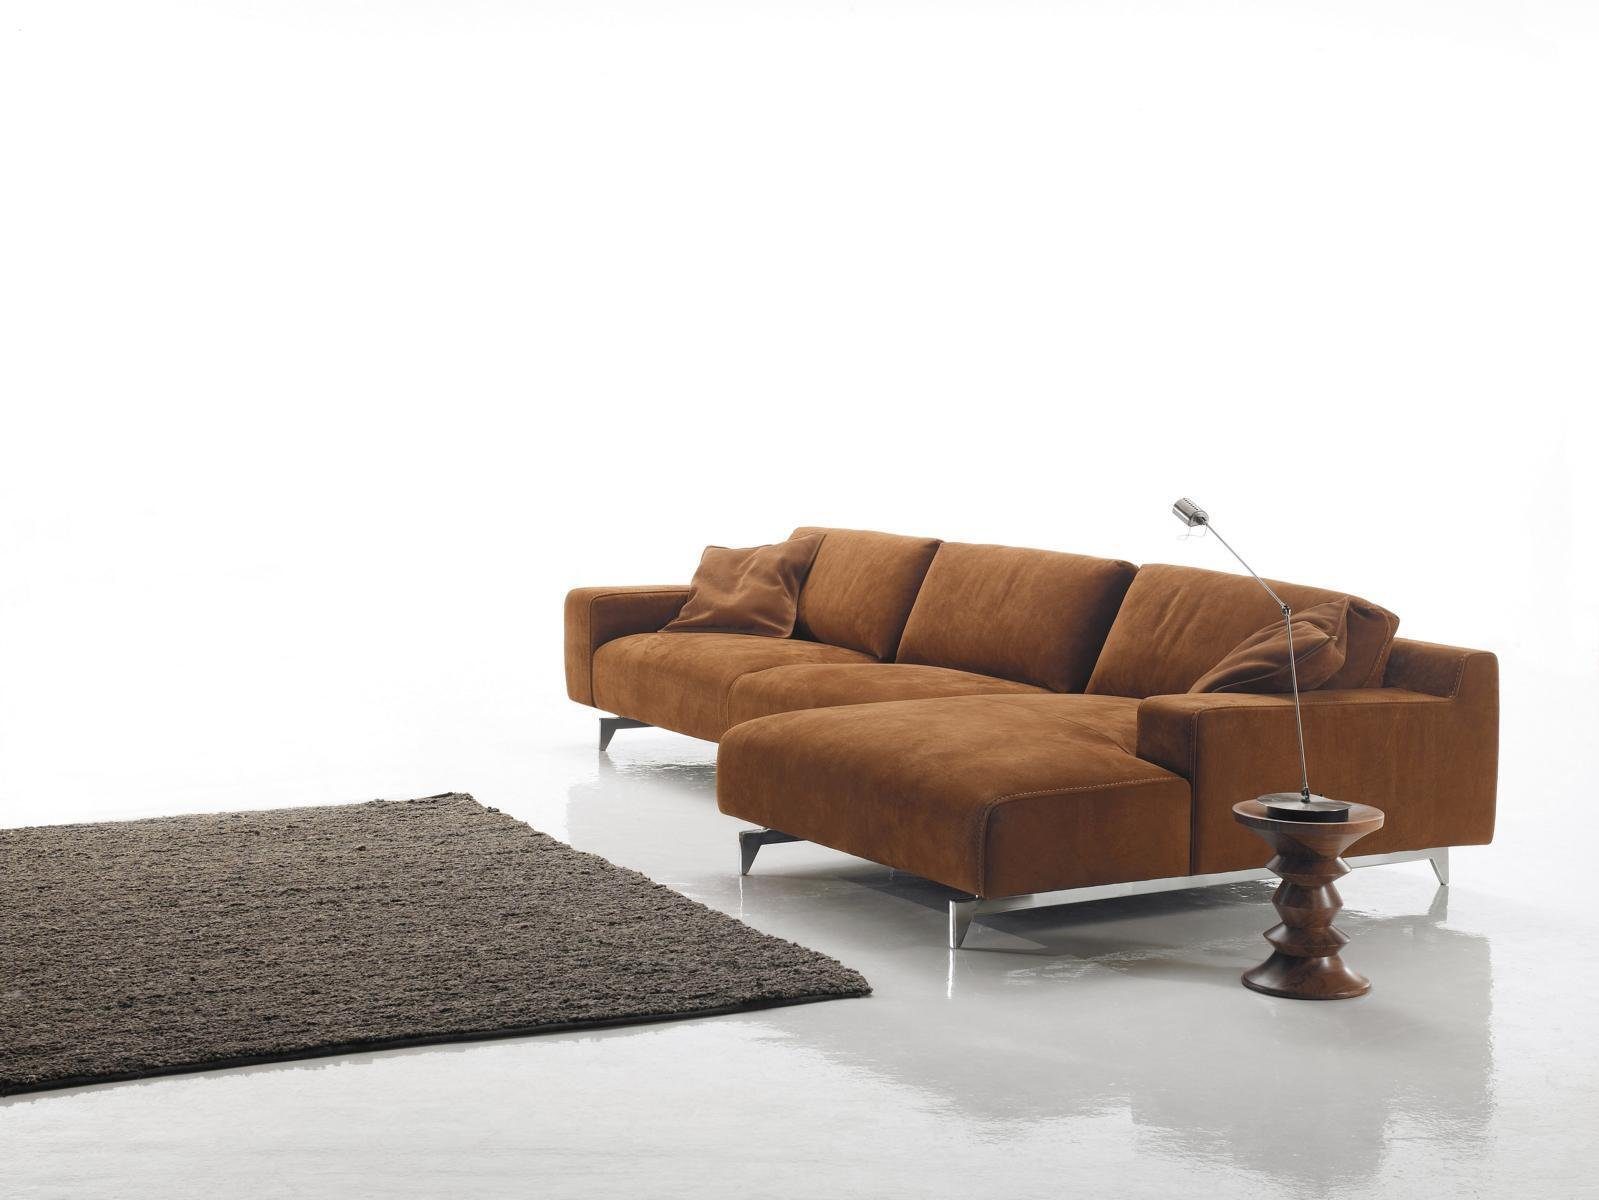 JVmoebel Ecksofa Ecksofa Braun Design Polsterung Couch Textil Wohnzimmer L Form Sofas